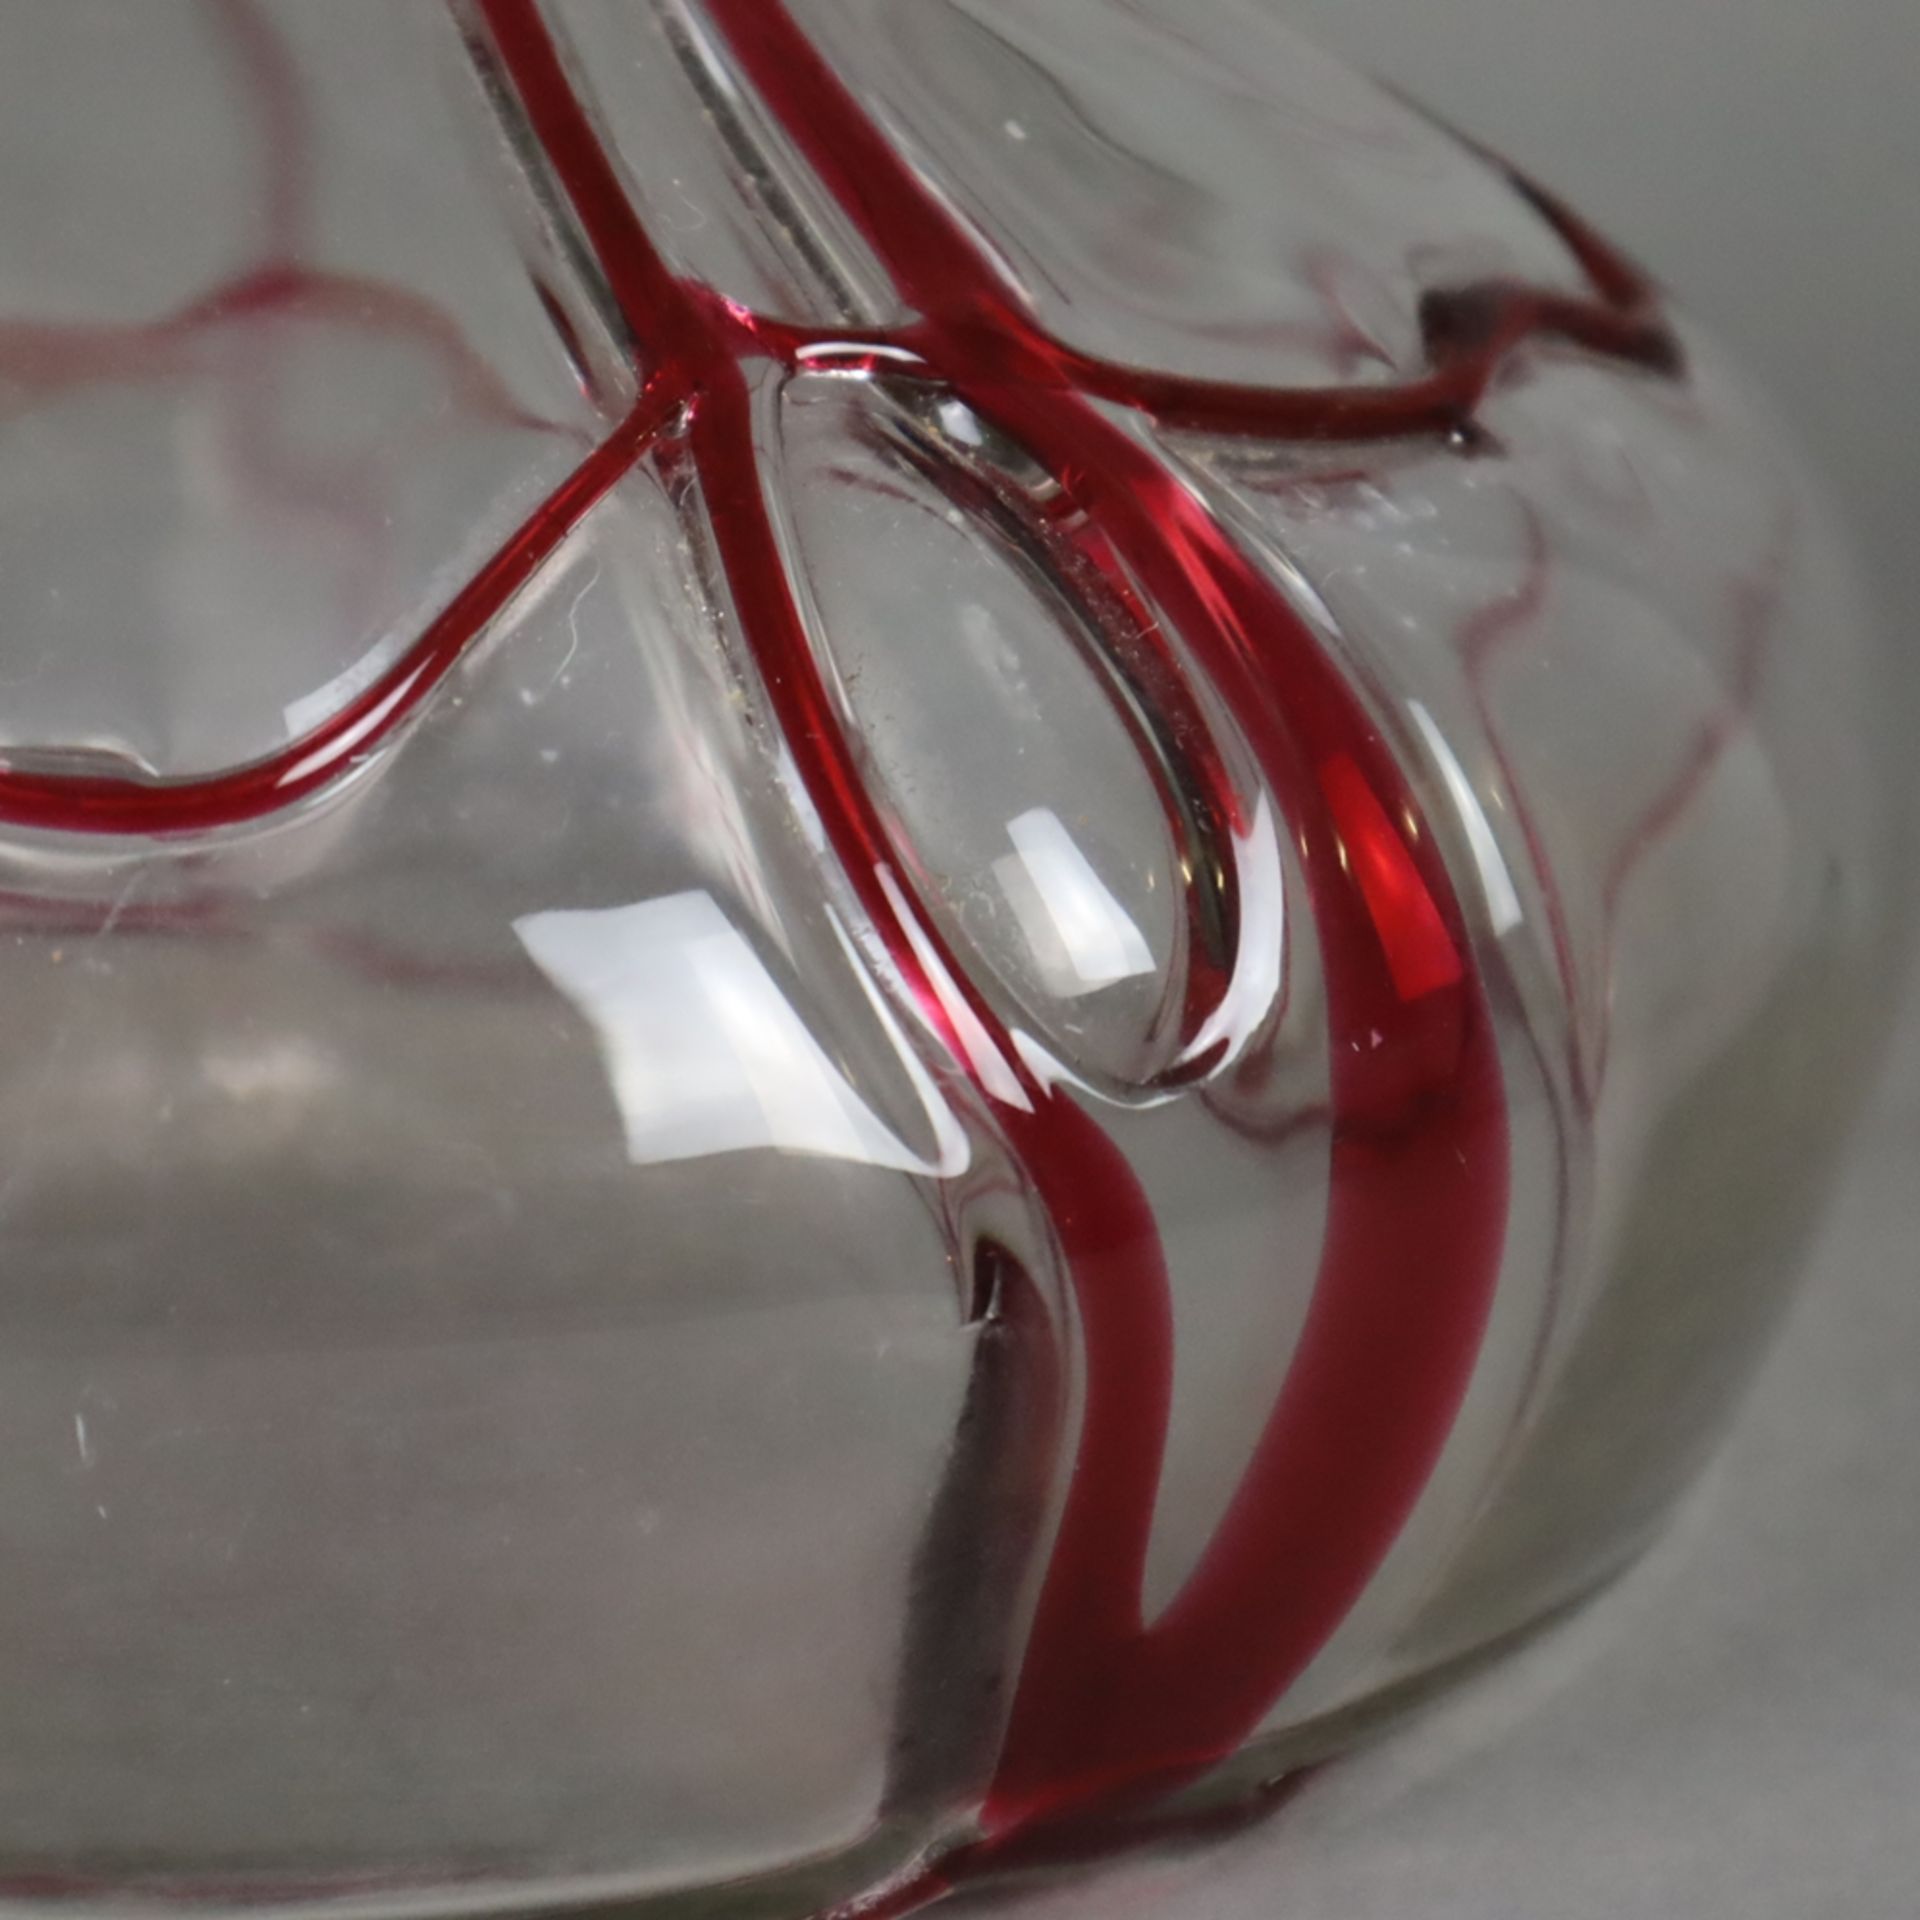 Glasvase - Klarglas mit rubinrotem, geädertem Fadendekor, gebauchte Form mit ei - Bild 4 aus 7